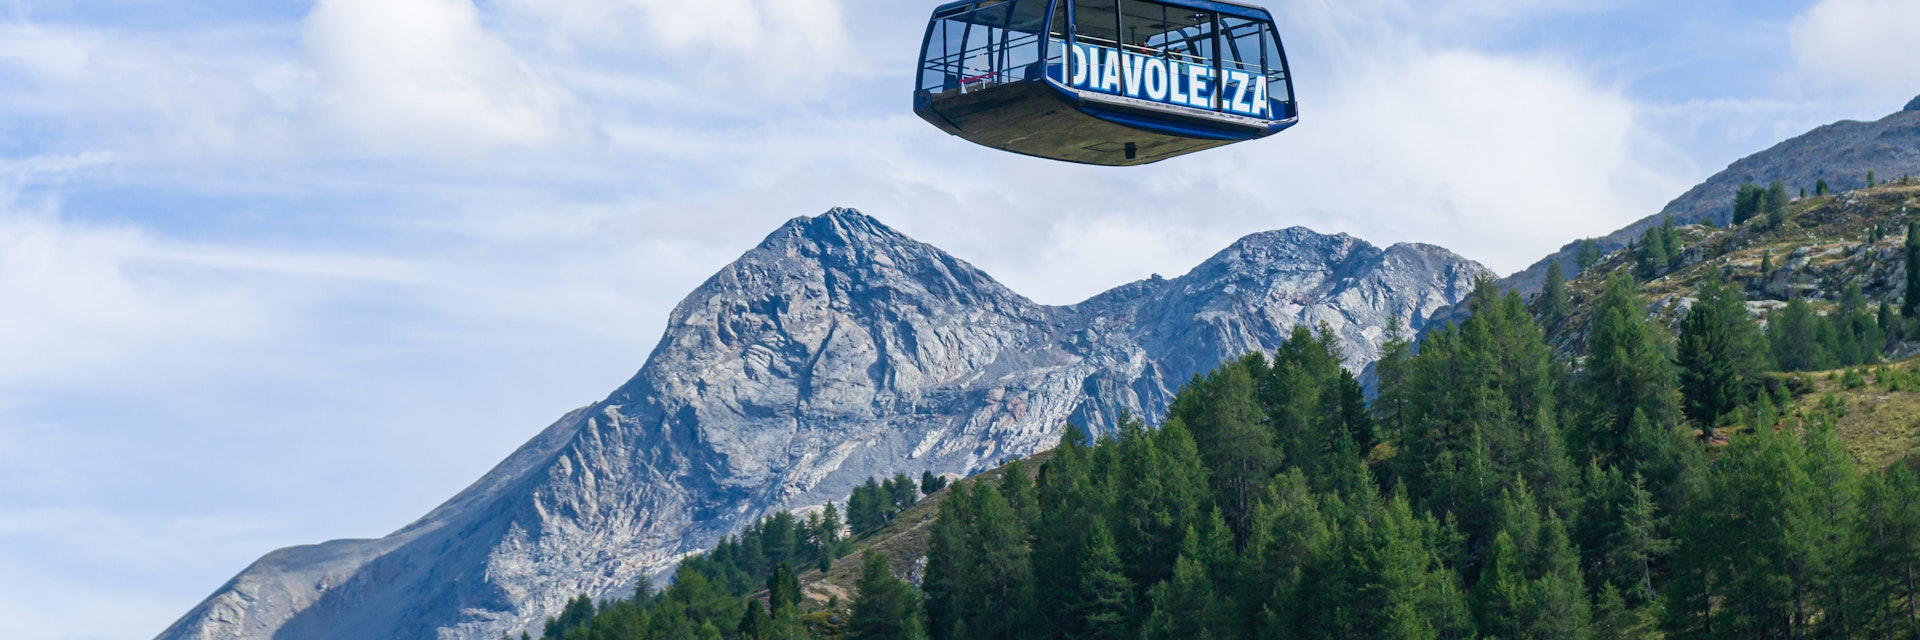 The cable car to the Diavolezza glacier.